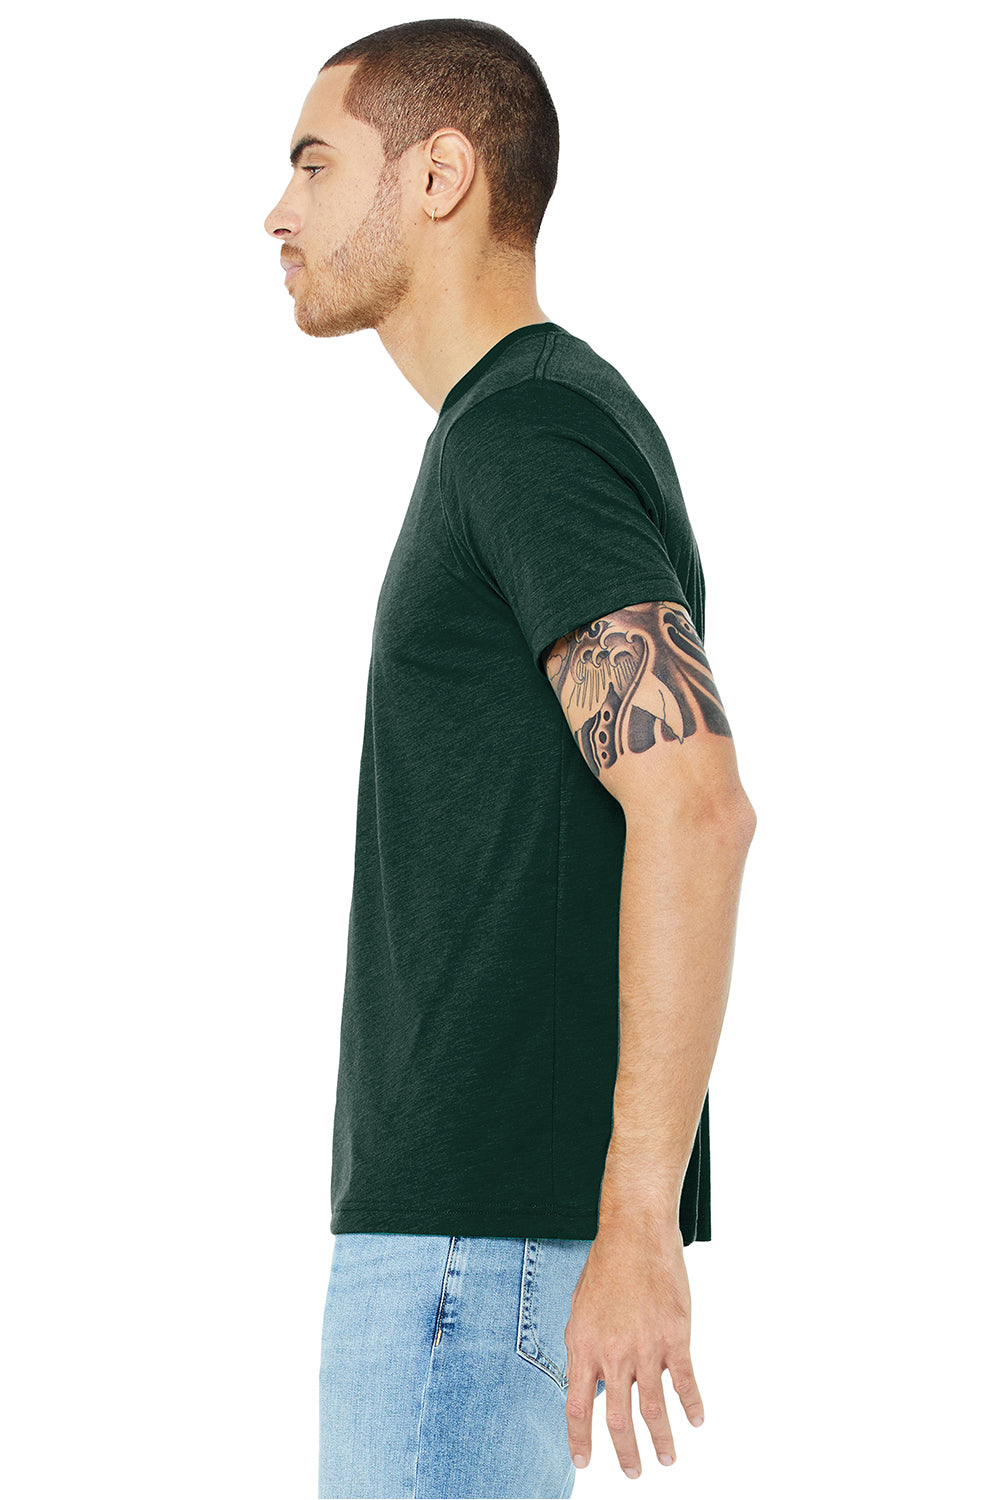 Bella + Canvas BC3413/3413C/3413 Mens Short Sleeve Crewneck T-Shirt Emerald Green Model Side